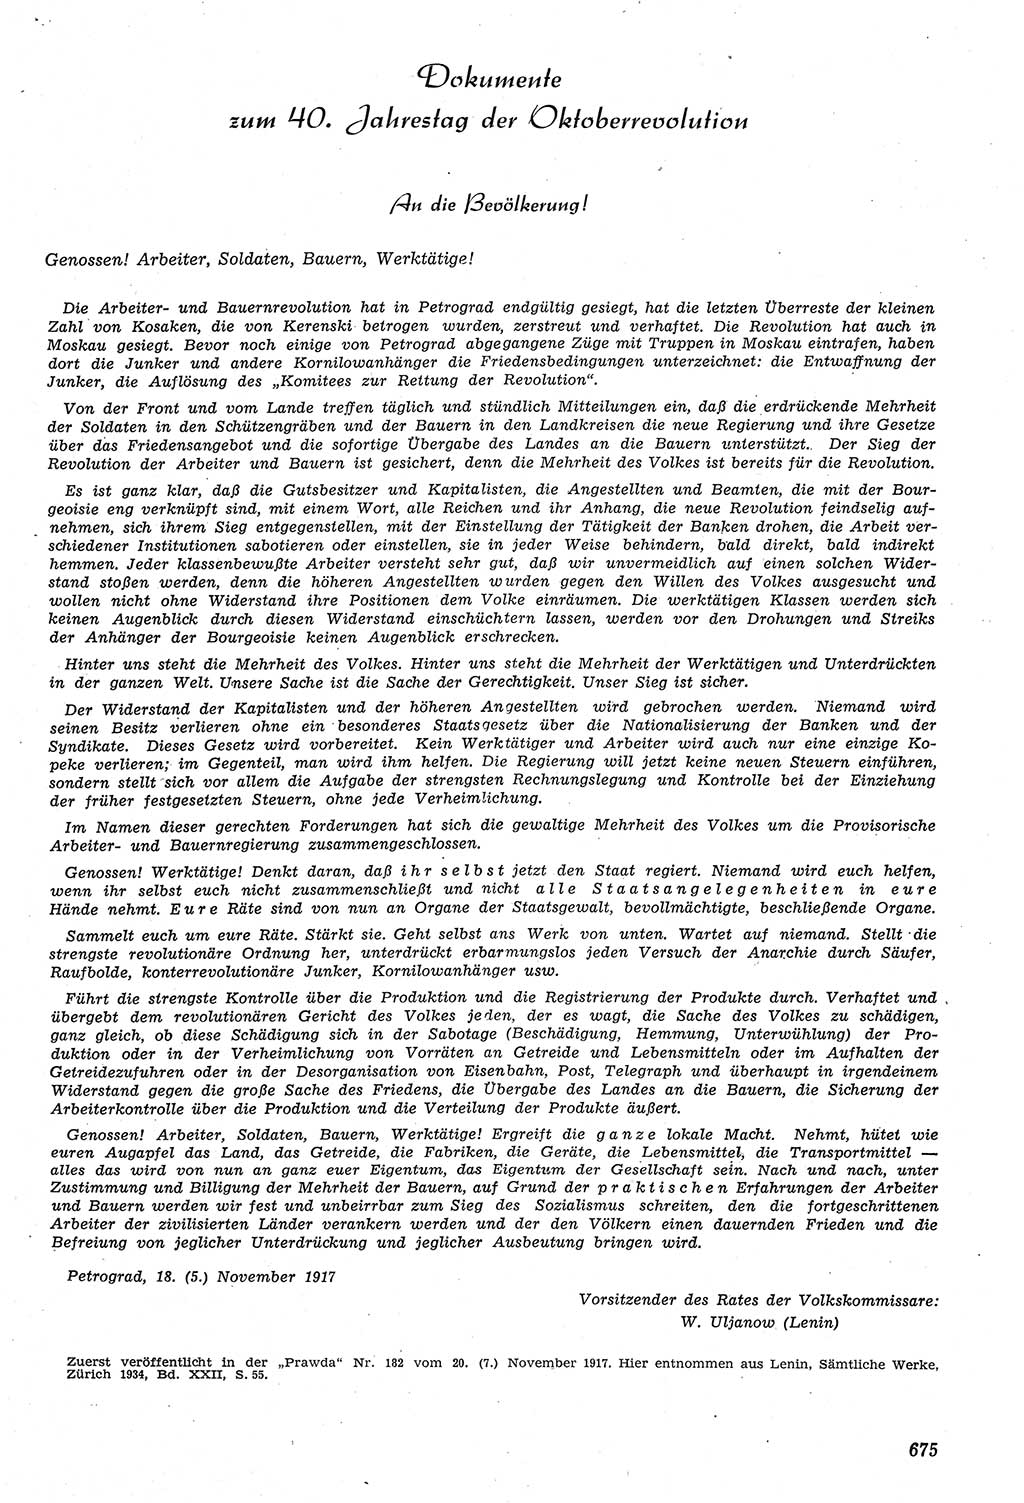 Neue Justiz (NJ), Zeitschrift für Recht und Rechtswissenschaft [Deutsche Demokratische Republik (DDR)], 11. Jahrgang 1957, Seite 675 (NJ DDR 1957, S. 675)